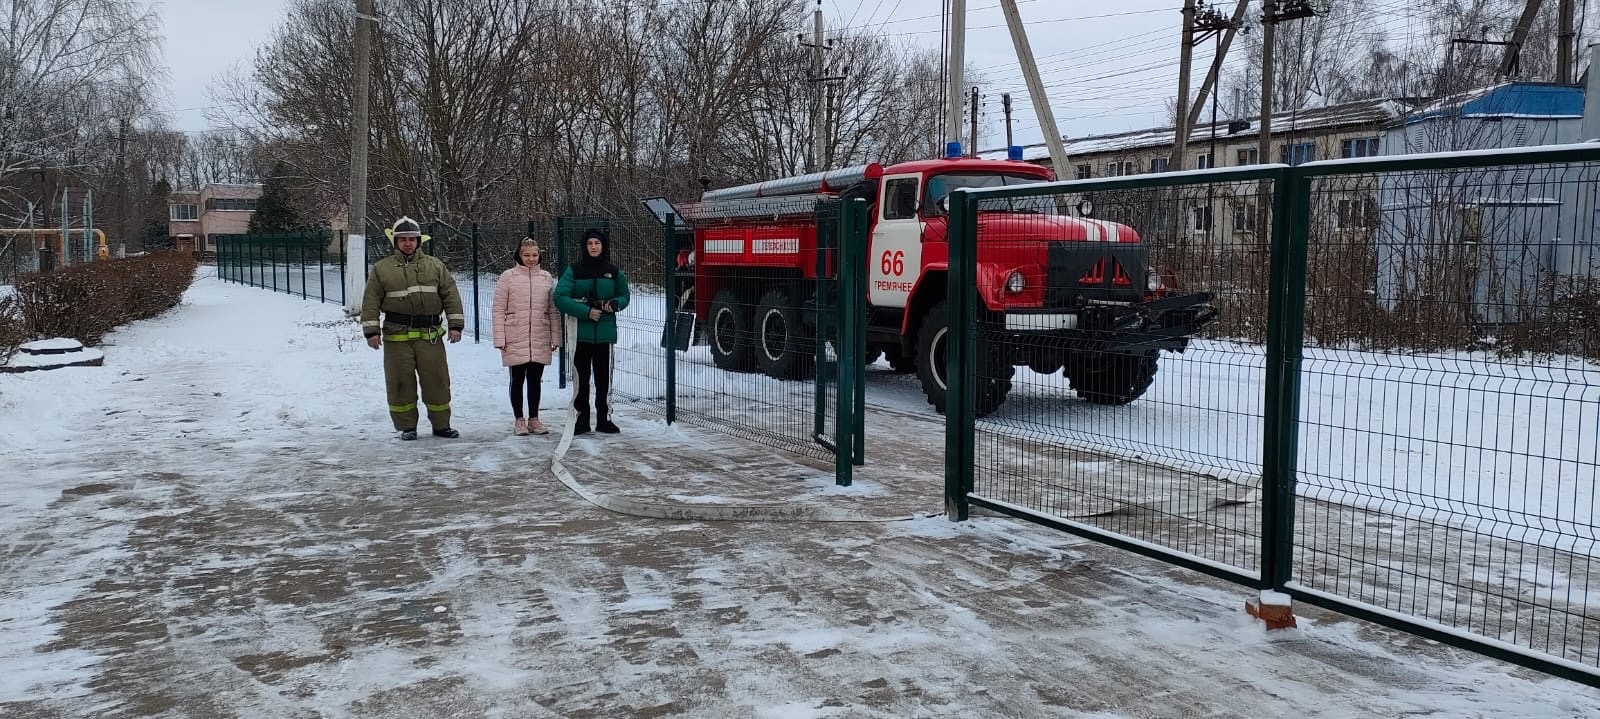 Сегодня сотрудники пожарной части N 66 ГУ&amp;quot;УПС&amp;quot;ТО России познакомили обучающихся МКОУ «Краснобогатырский ЦО» с пожарной техникой, ее комплектацией.